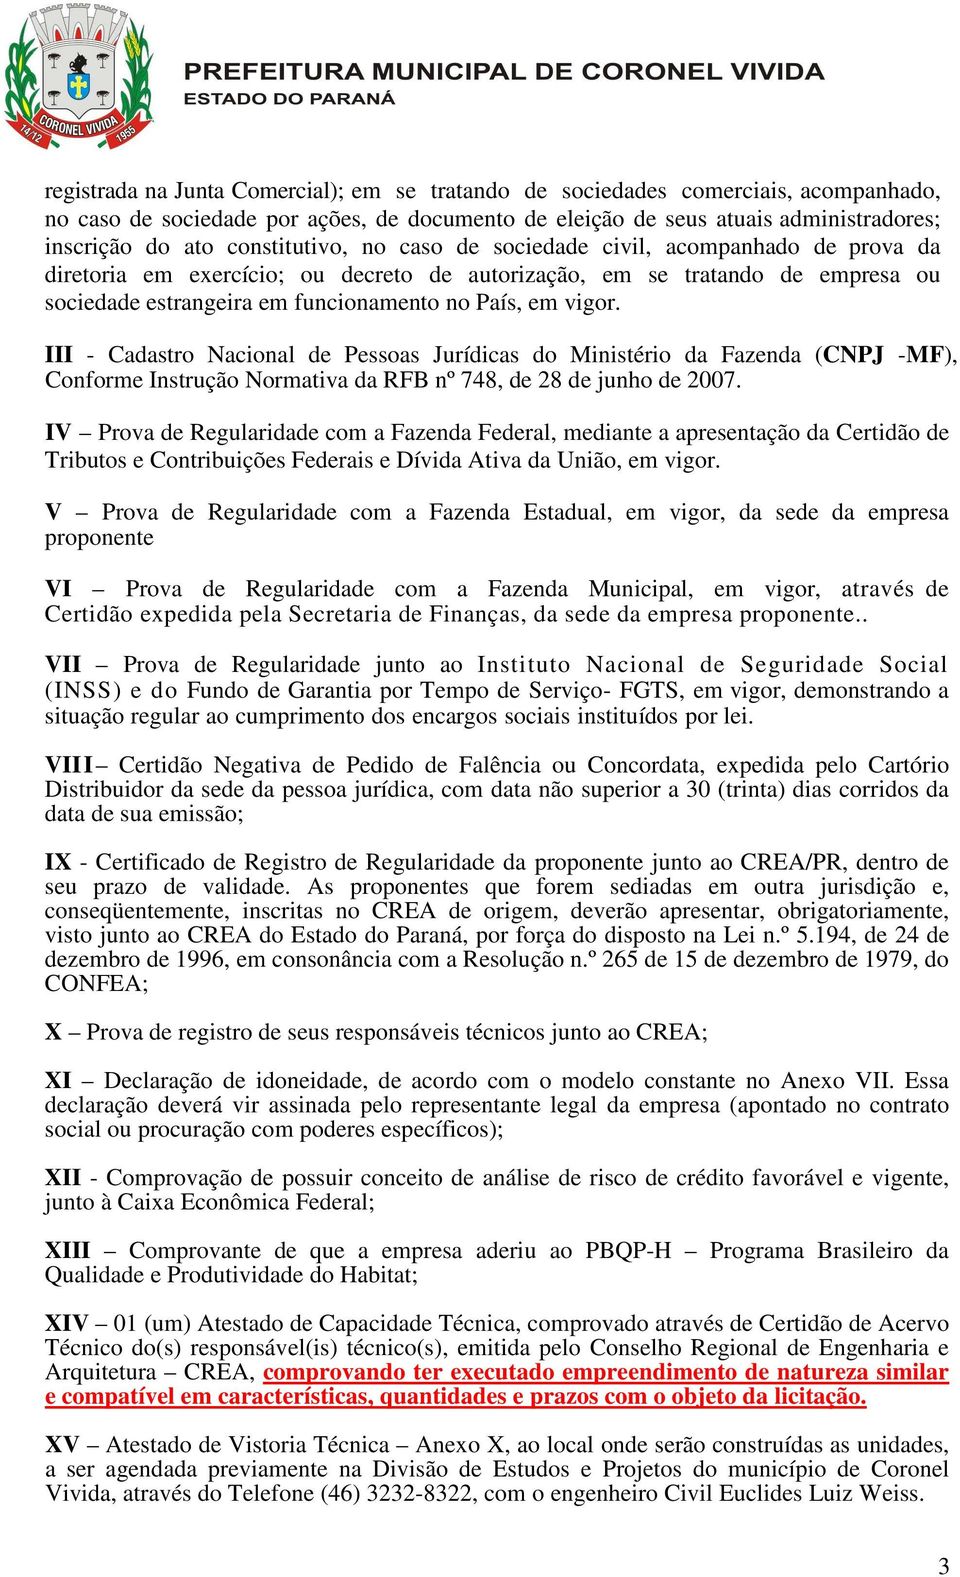 vigor. III - Cadastro Nacional de Pessoas Jurídicas do Ministério da Fazenda (CNPJ -MF), Conforme Instrução Normativa da RFB nº 748, de 28 de junho de 2007.